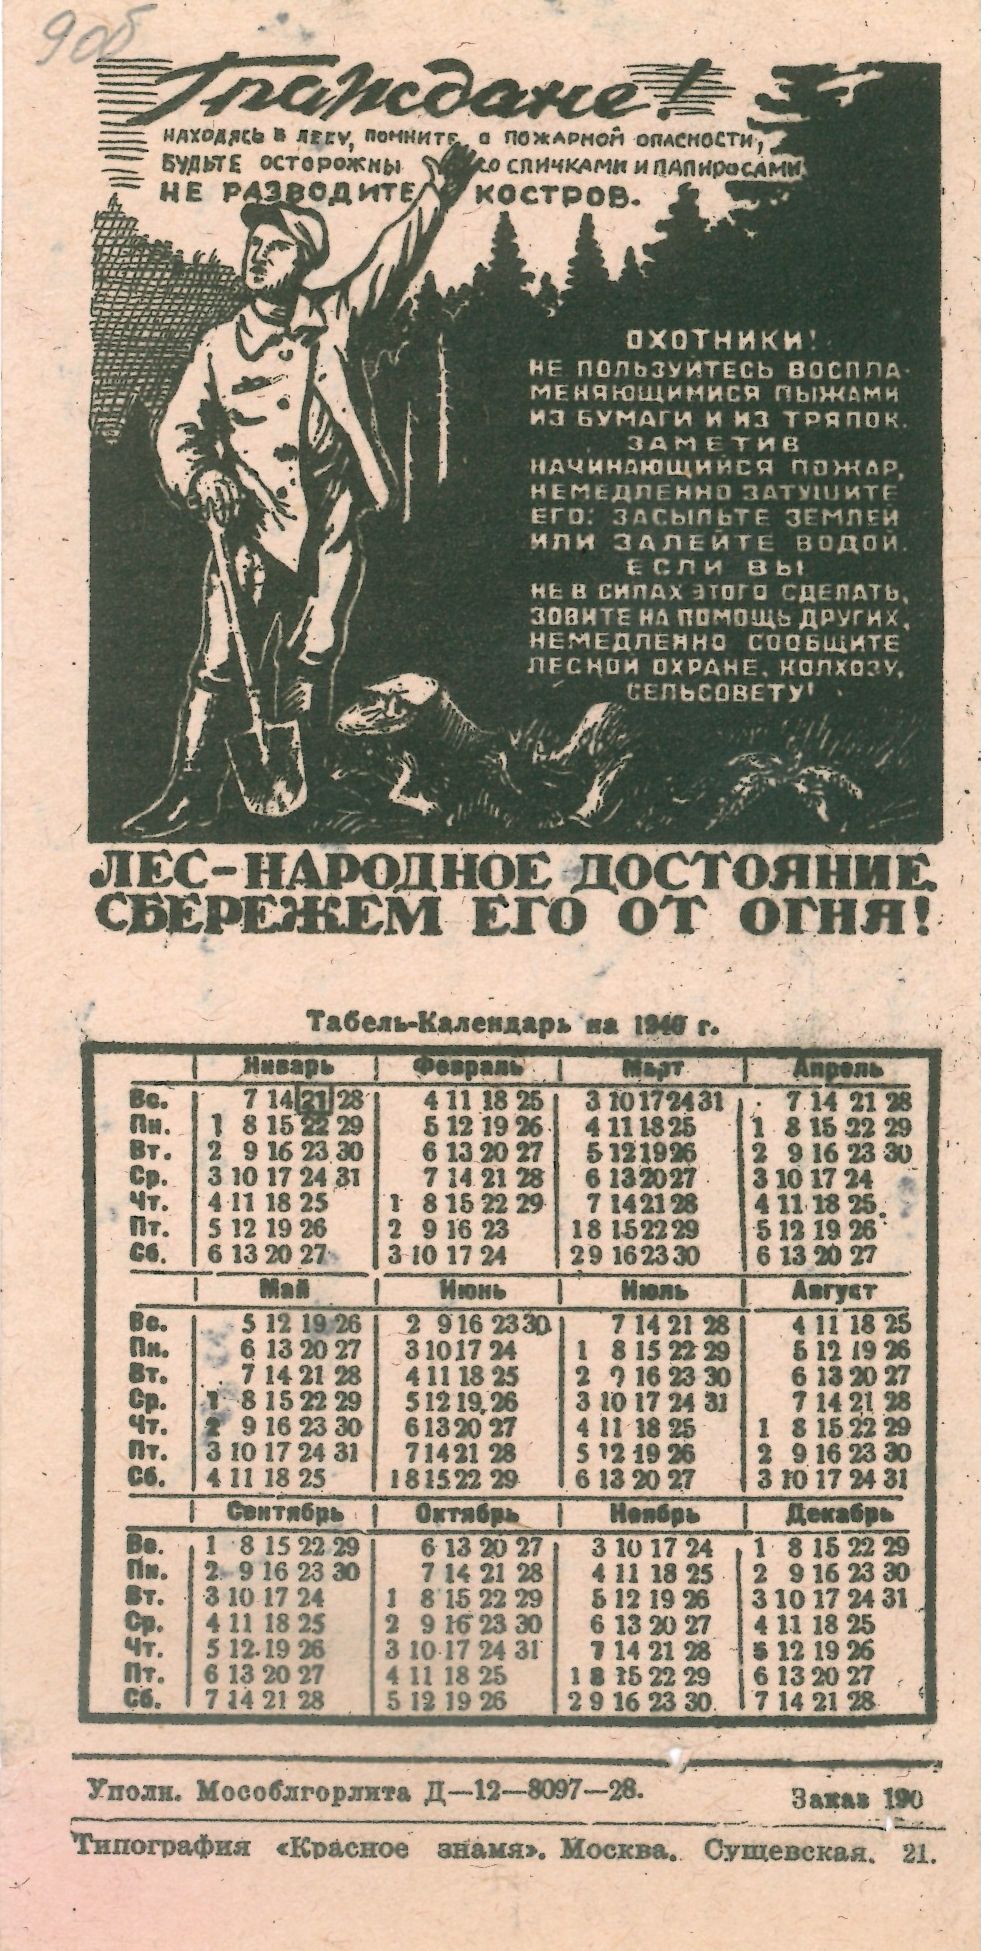 Табель-календарь на 1940 г. с изображением на тему 